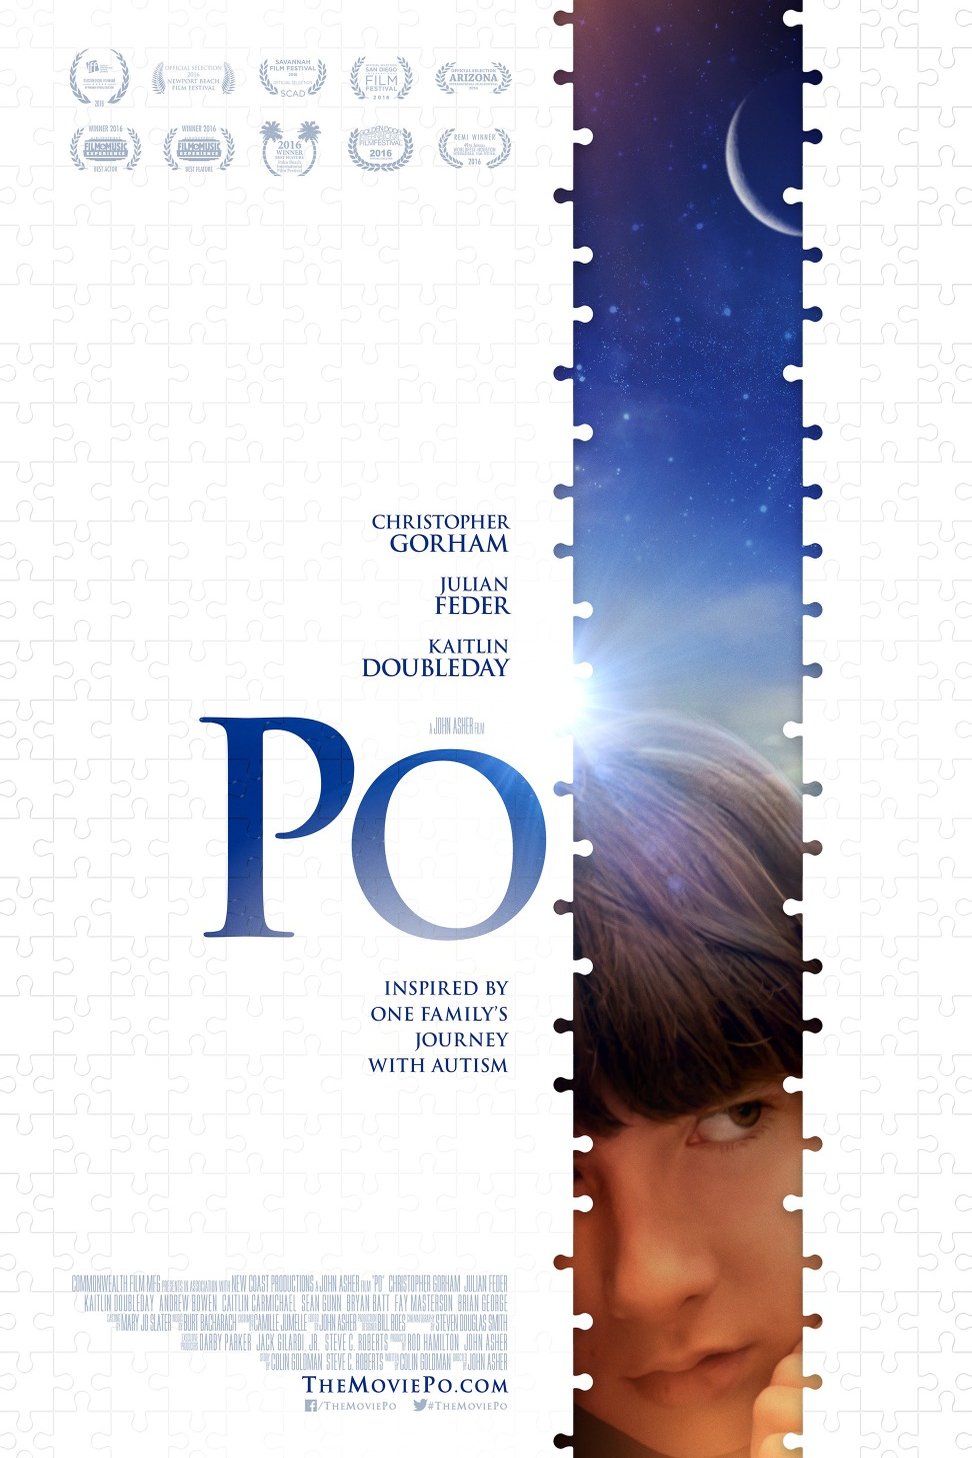 L'affiche du film Po